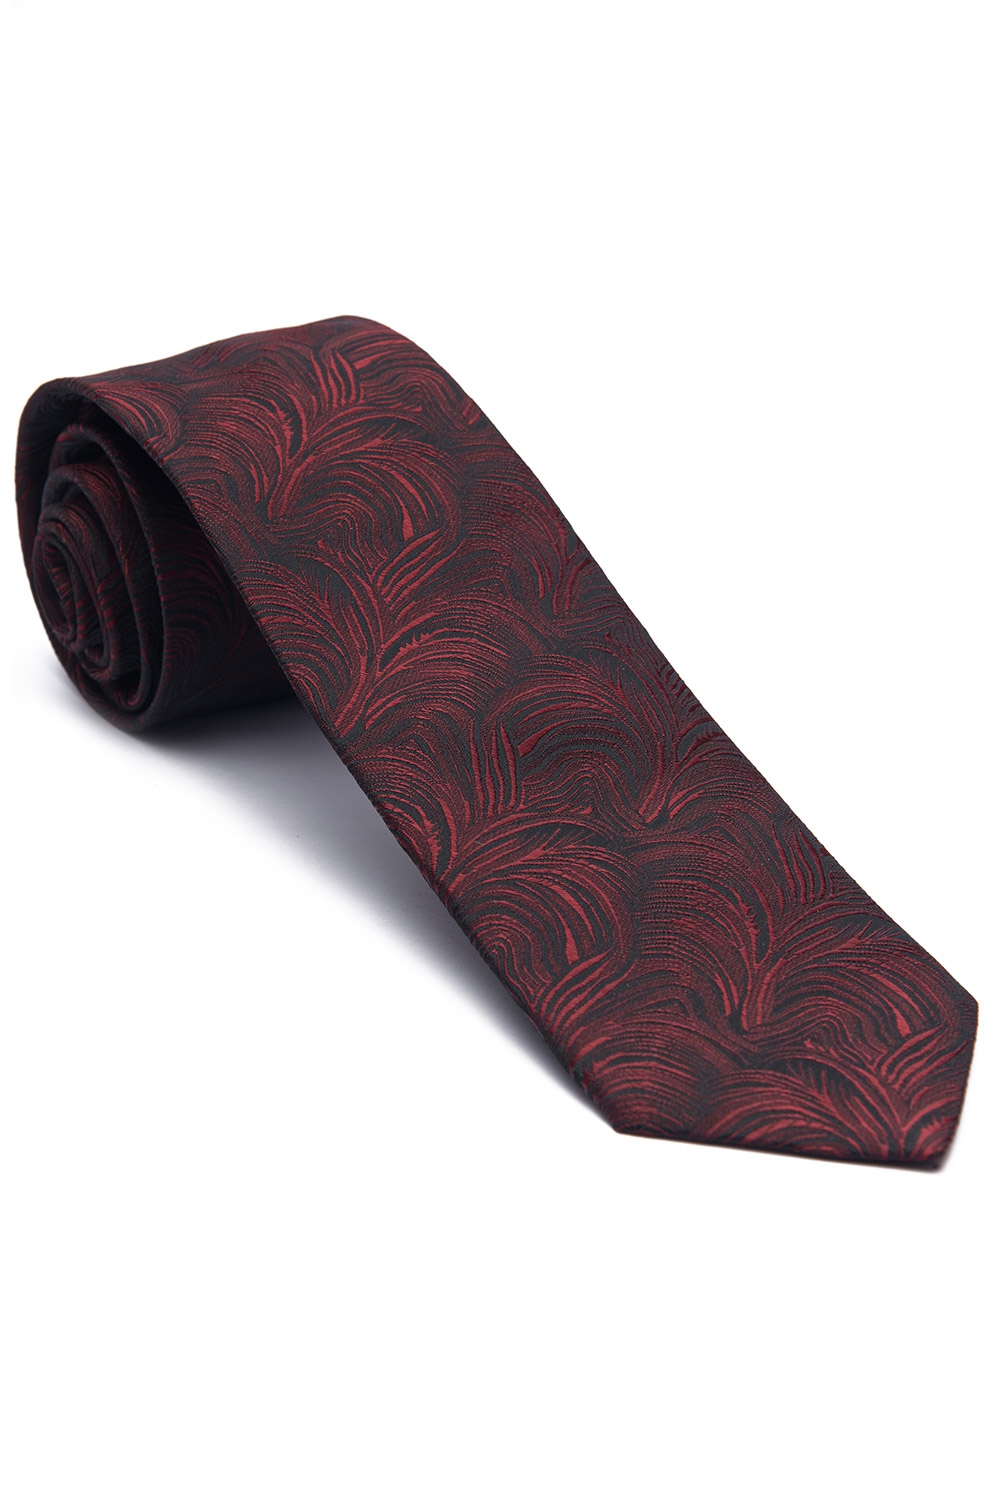 Cravata grena print floral 0